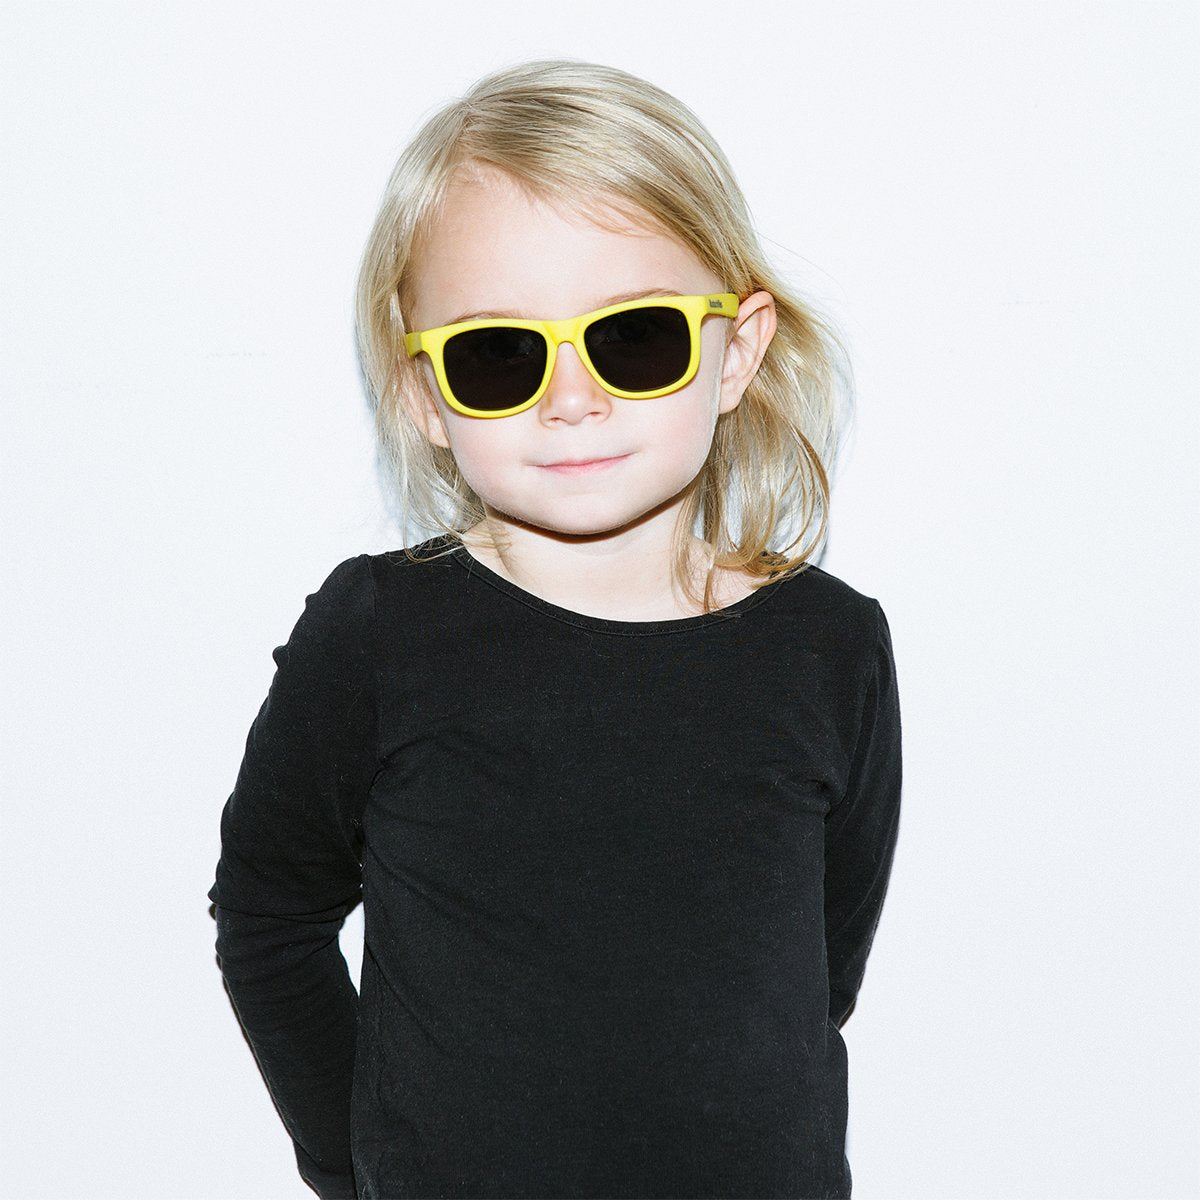 Hipsterkid Classics Kids Sunglasses - Yellow (3-6 years)